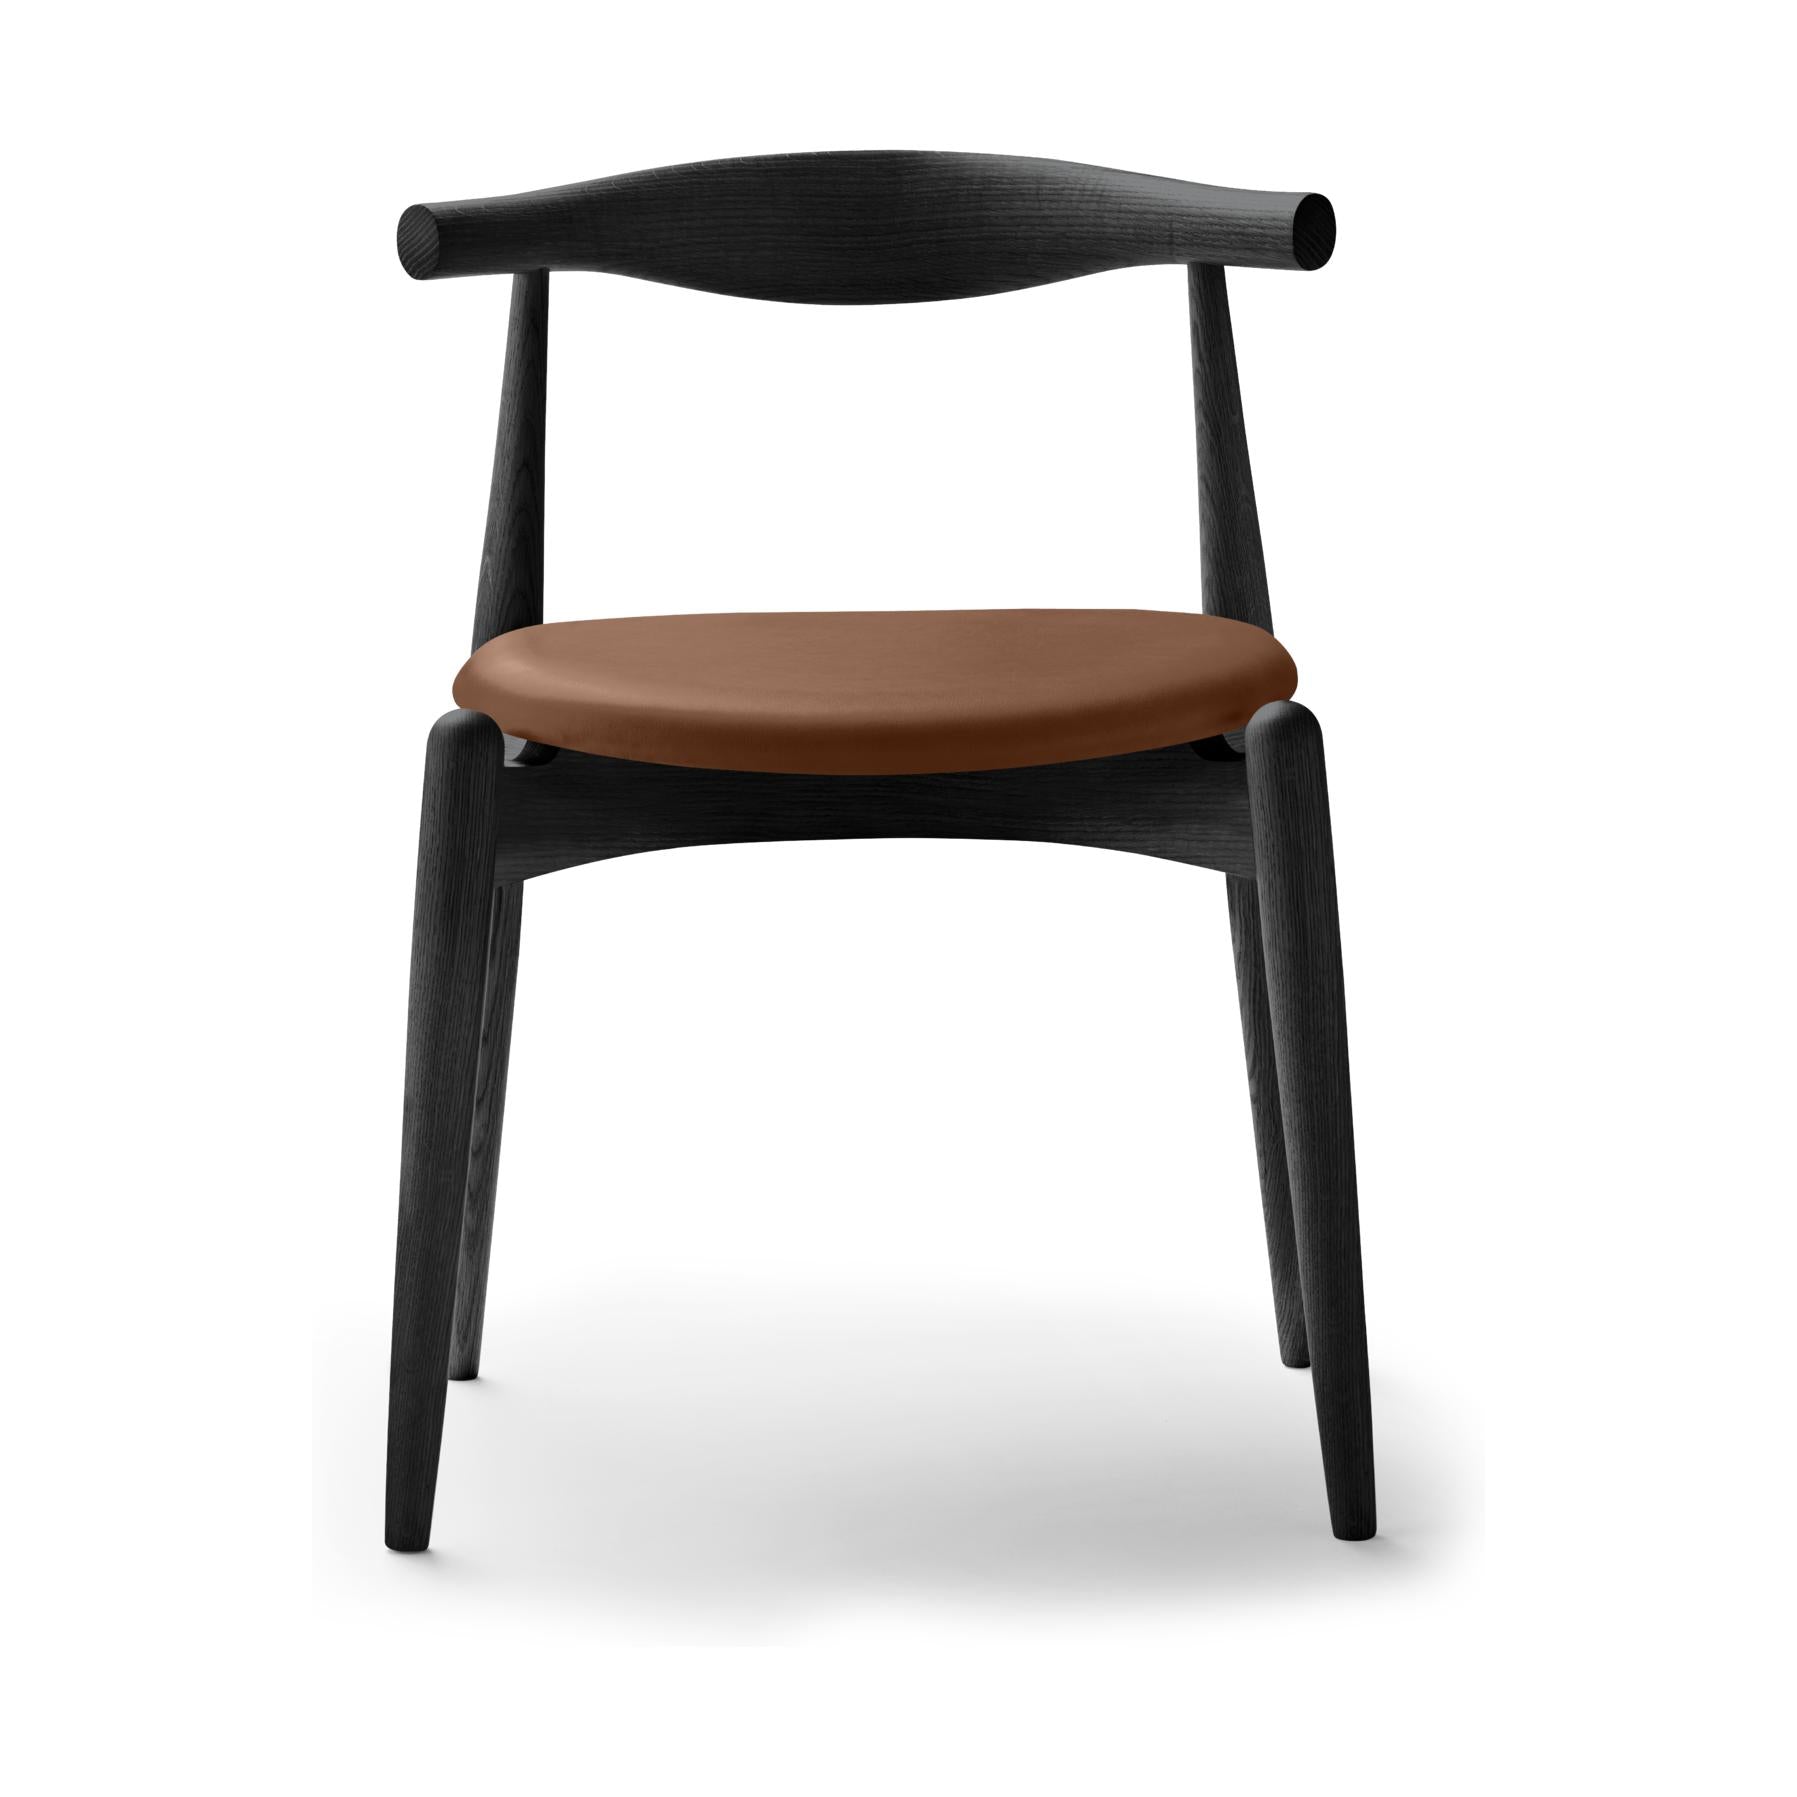 Carl Hansen CH20 Elbow Chair, Colored CHOK / Brown Leather